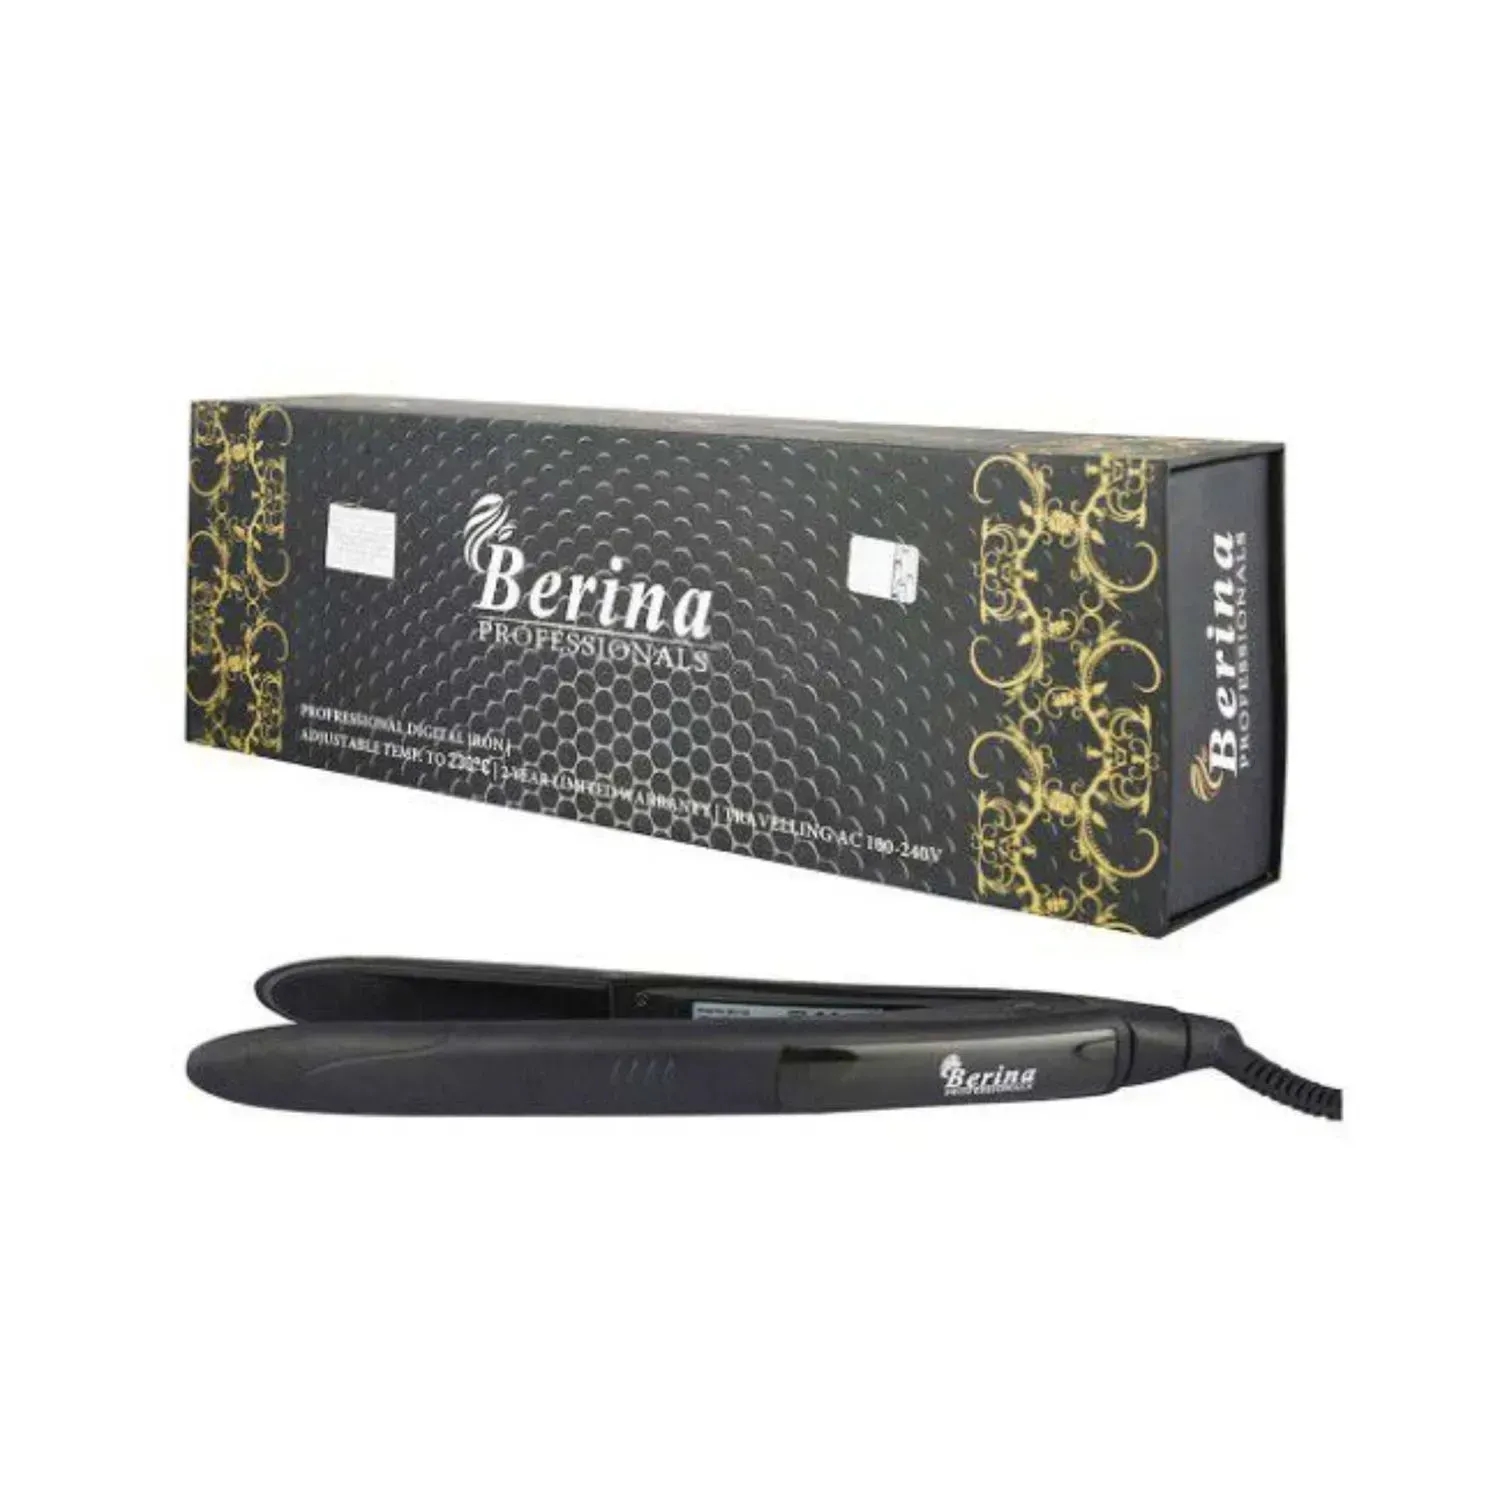 Berina | Berina Professional Digital Hair Straightener (BC-118)